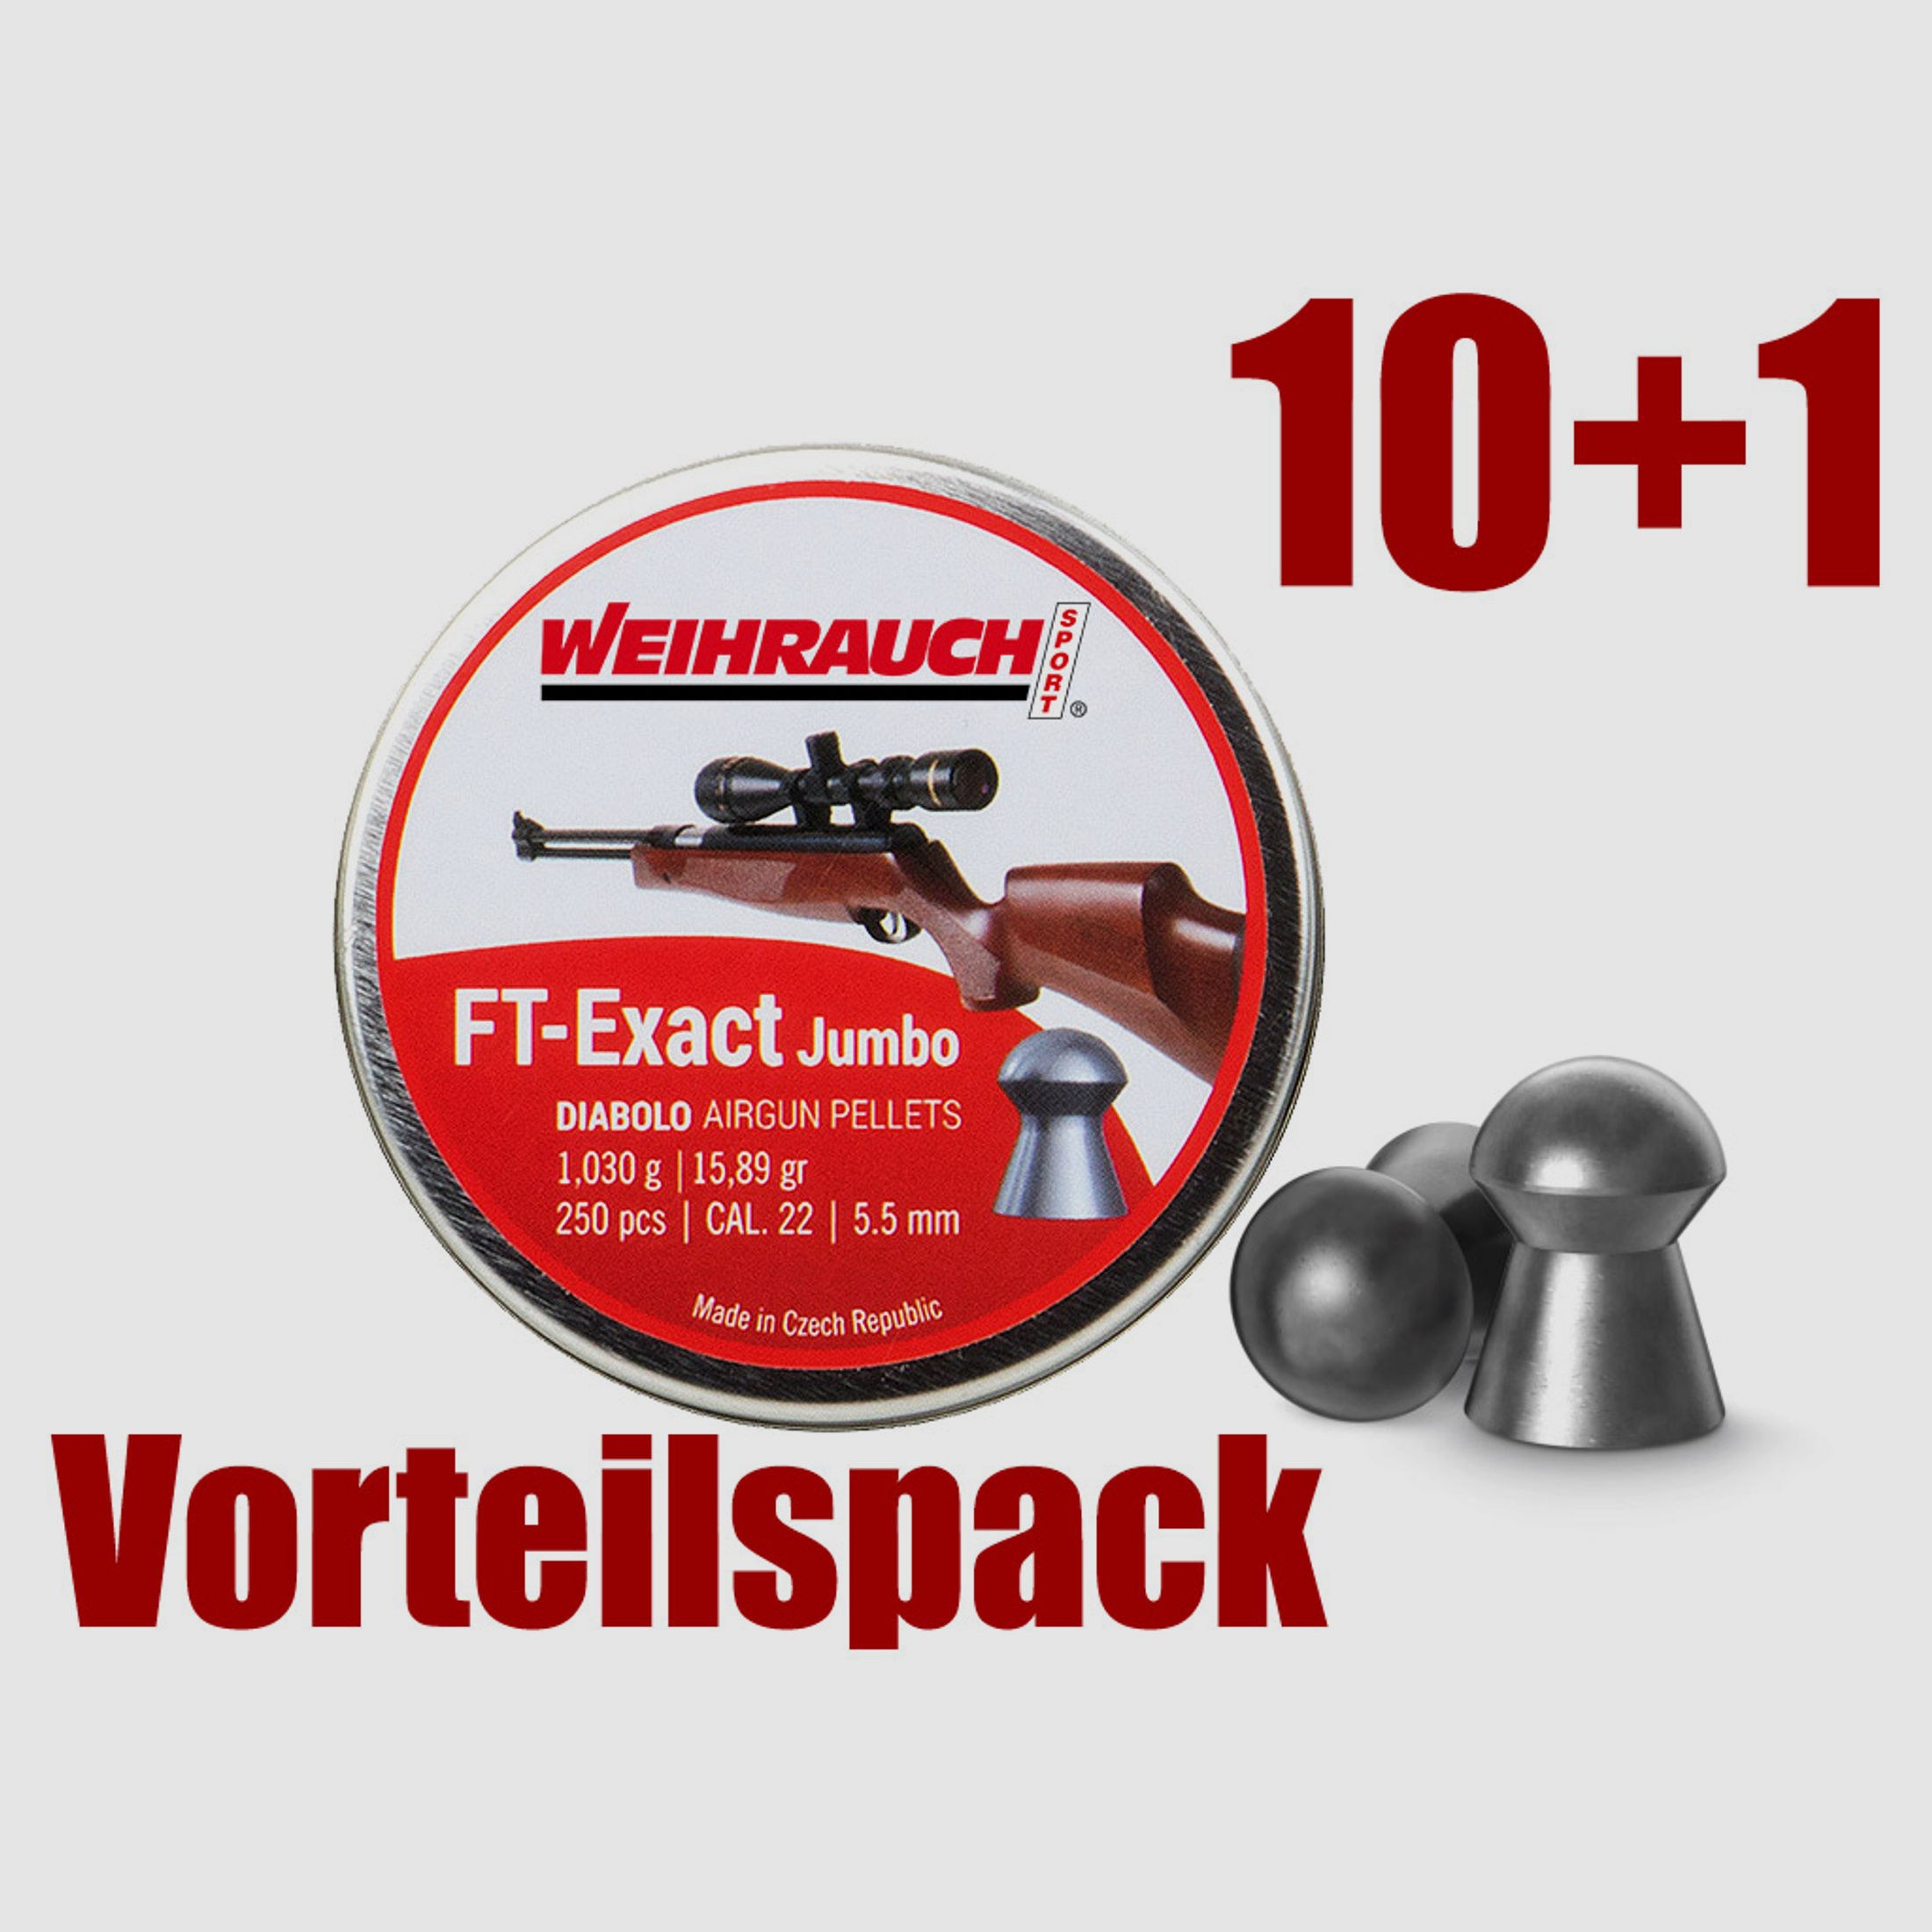 Vorteilspack 10+1 Rundkopf Diabolos Weihrauch FT-Exact Jumbo Kaliber 5,53 mm 1,03 g glatt 11 x 250 StĂĽck